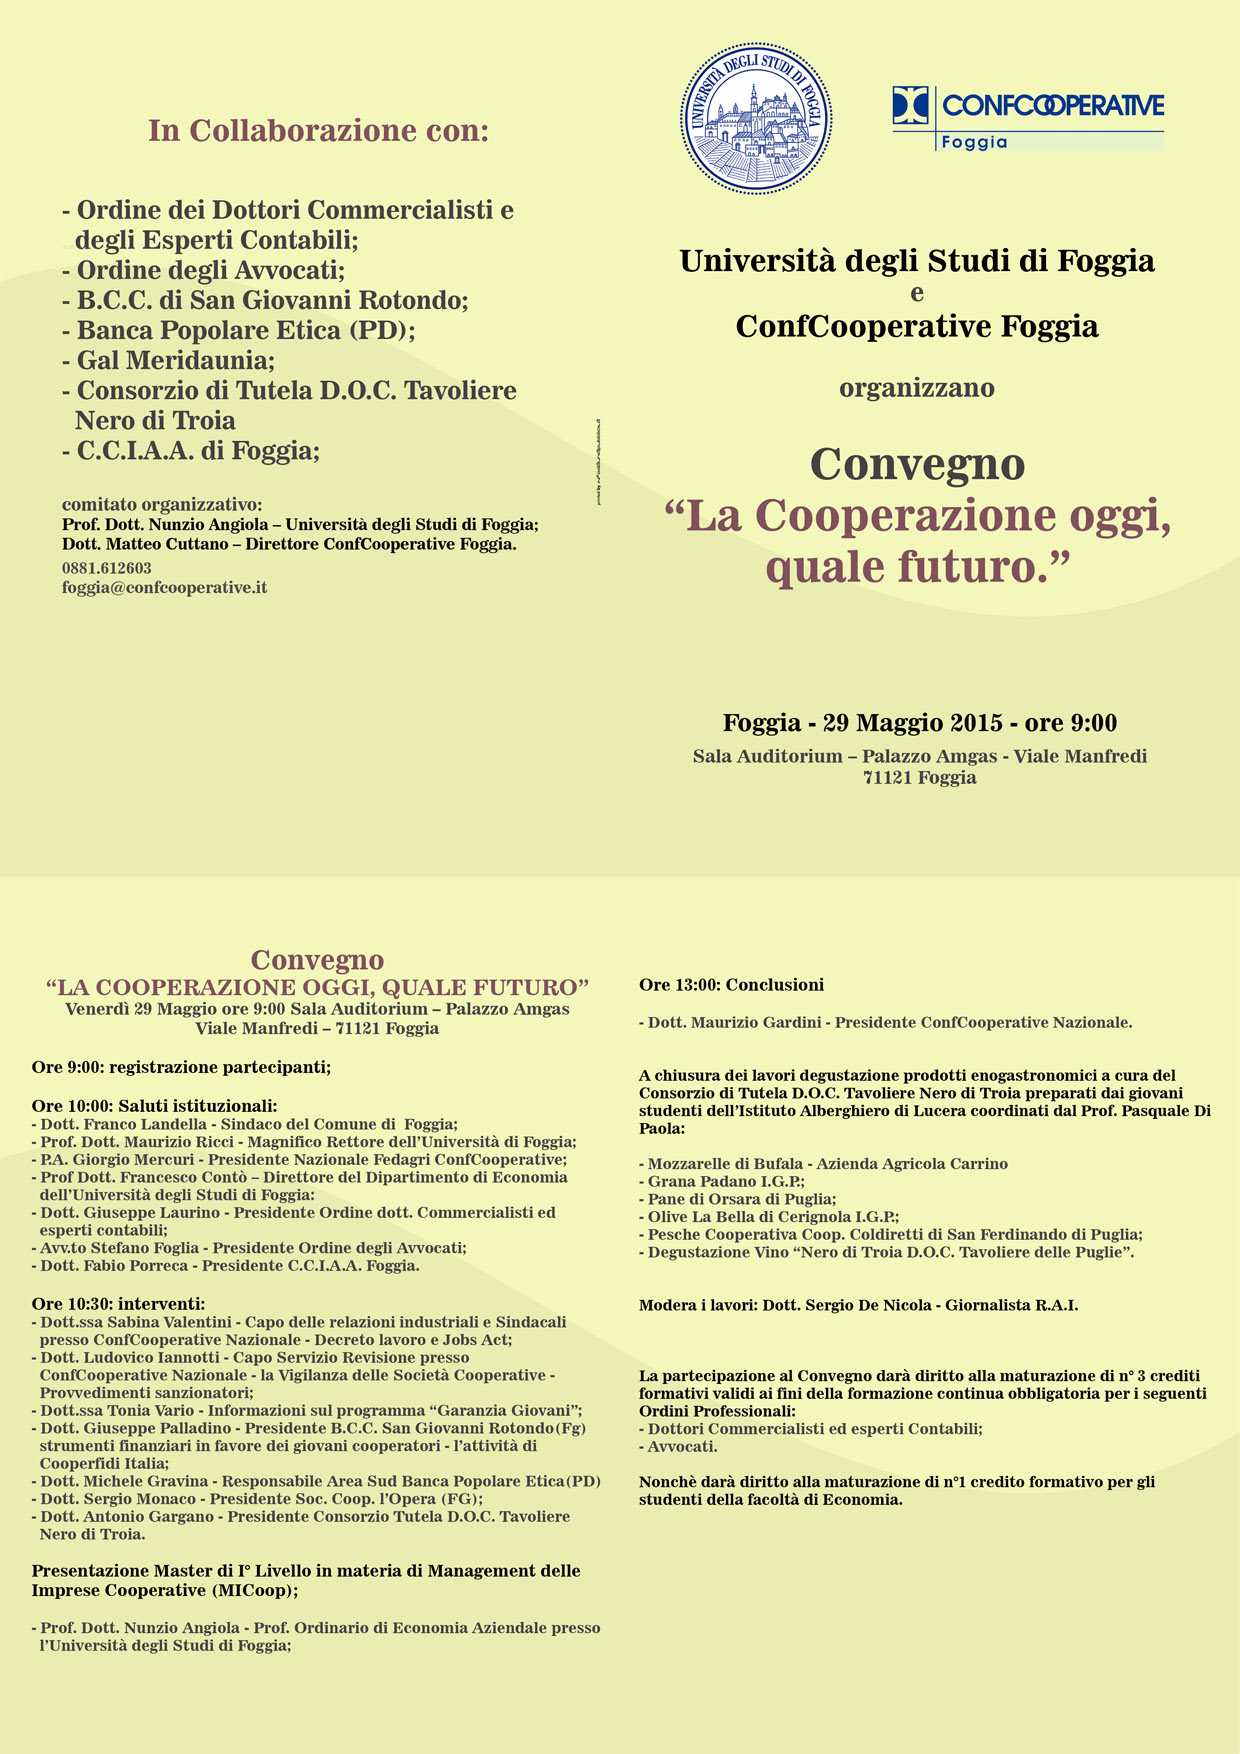 Foggia, Convegno: “La Cooperazione oggi, quale futuro” – 29 Maggio 2015